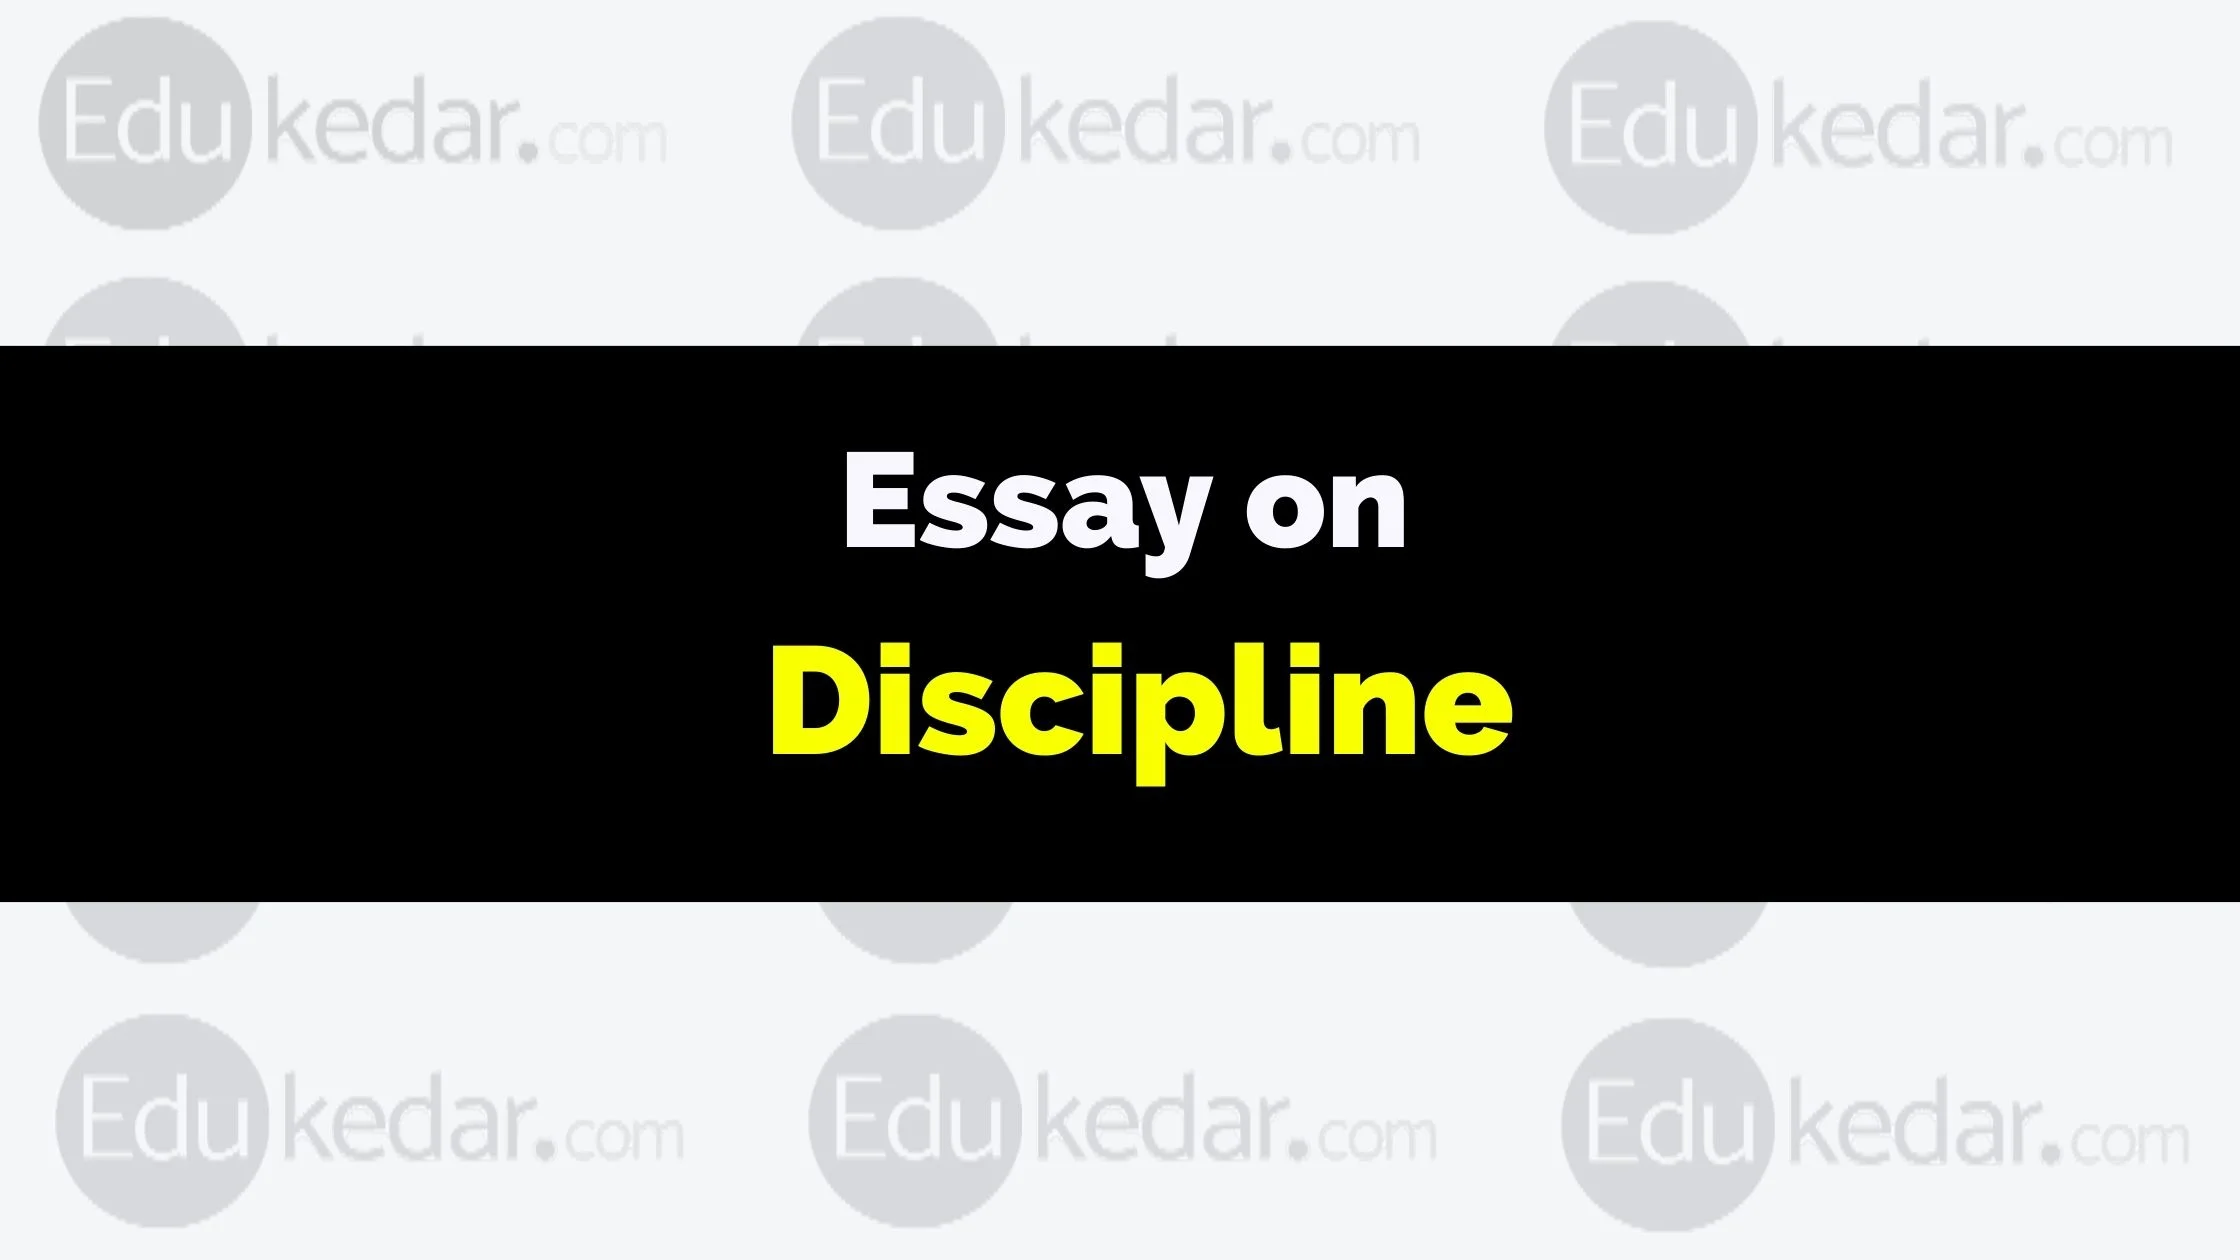 essay on discipline 150 words pdf